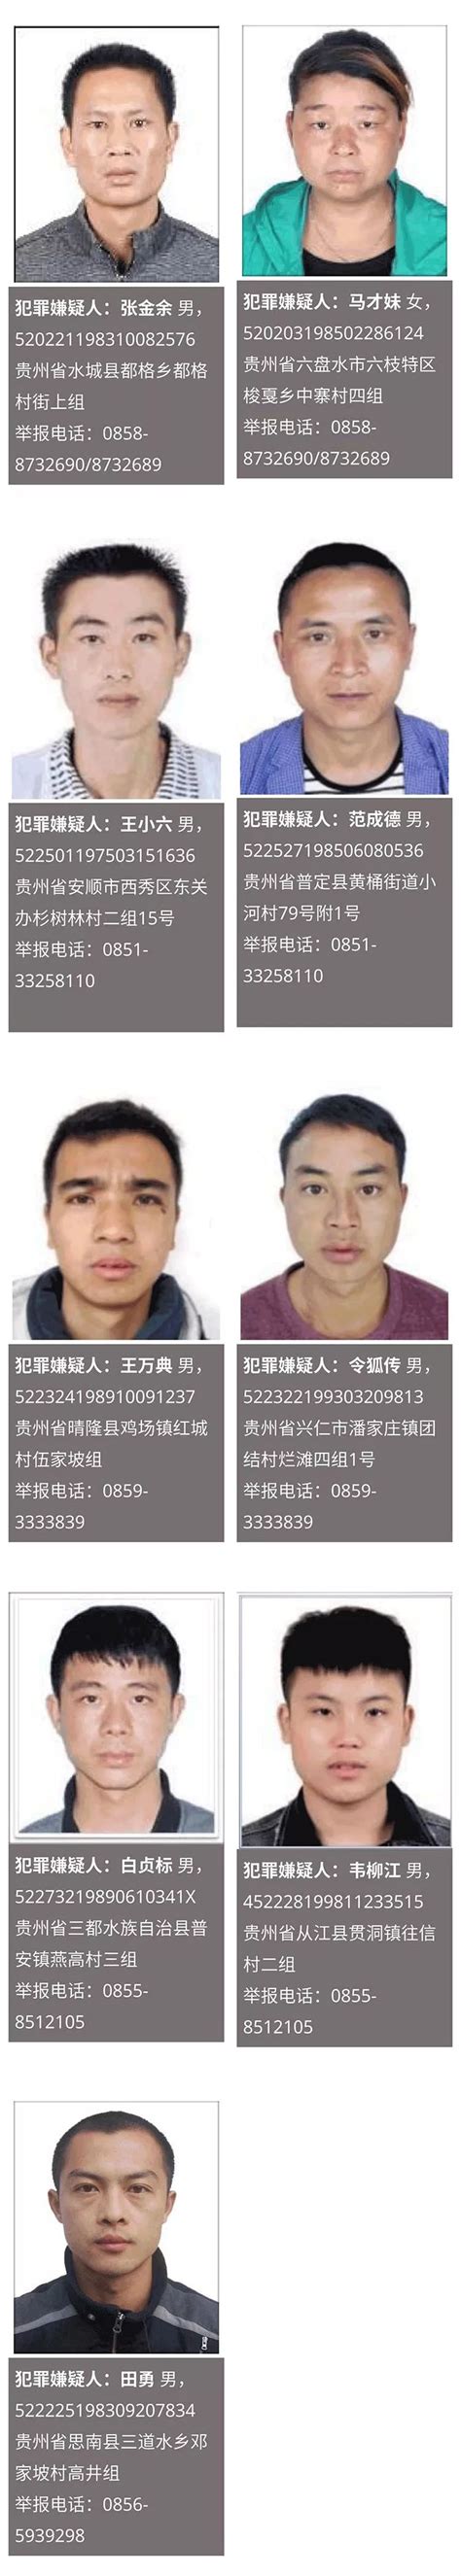 聚有料｜宁波市公安局公开悬赏通缉两批涉黑涉恶在逃人员